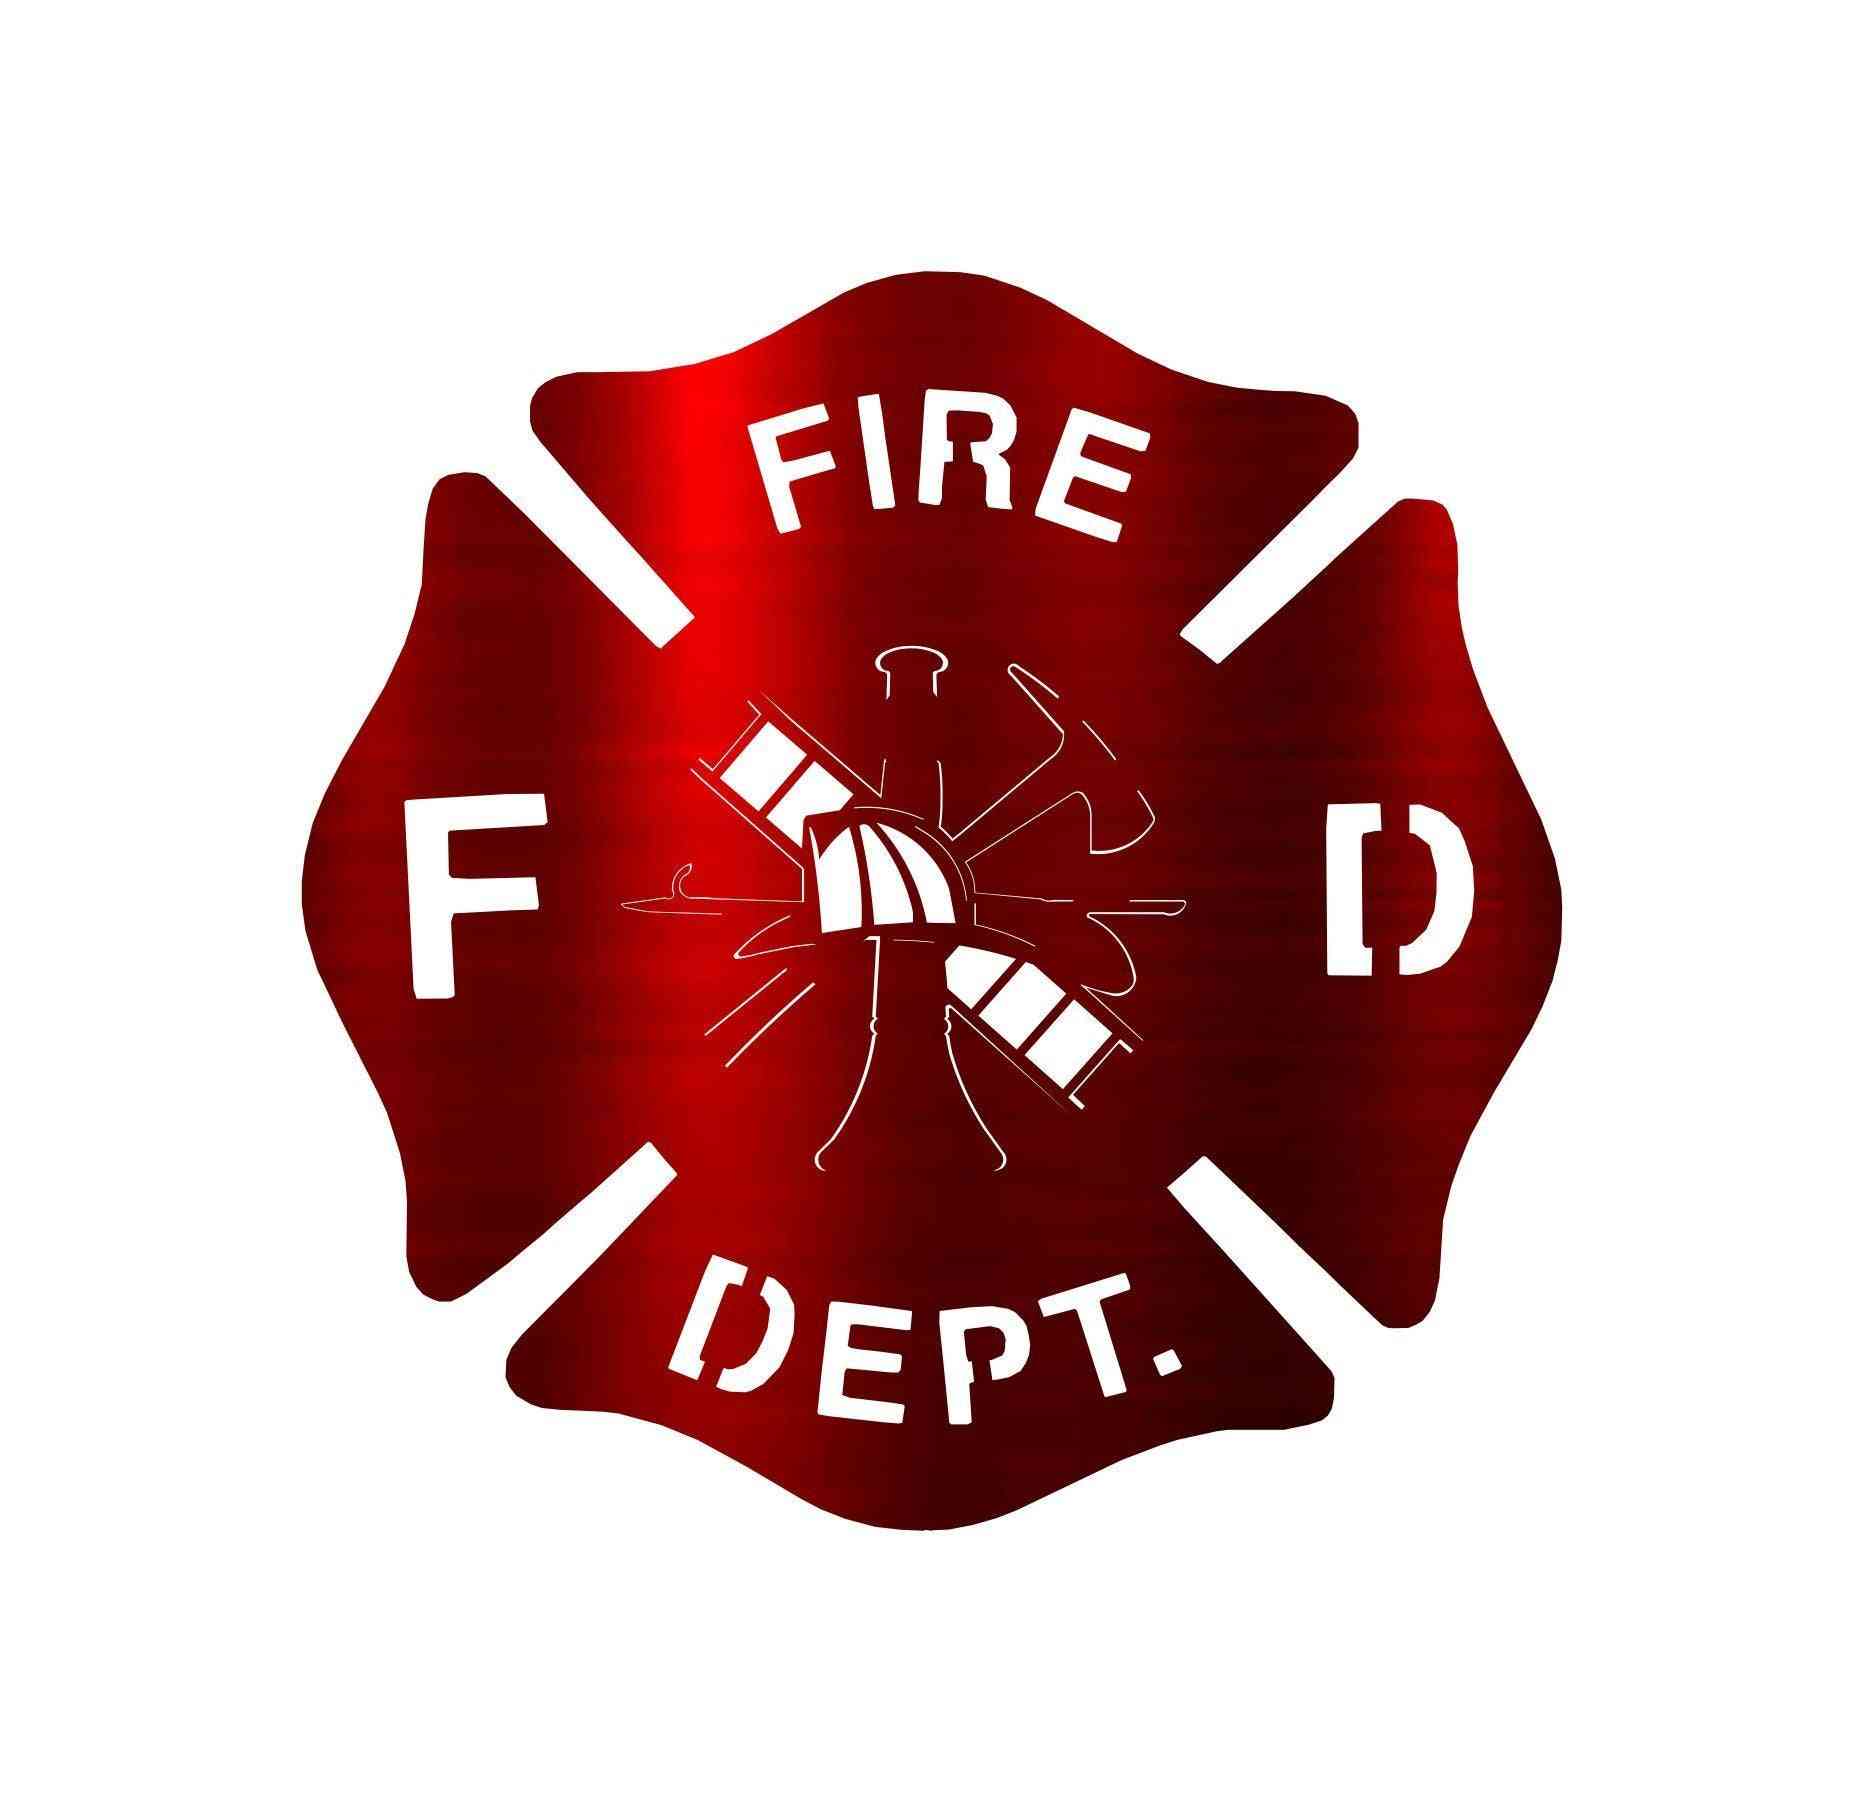 Jedinečný designový hasičský odznak